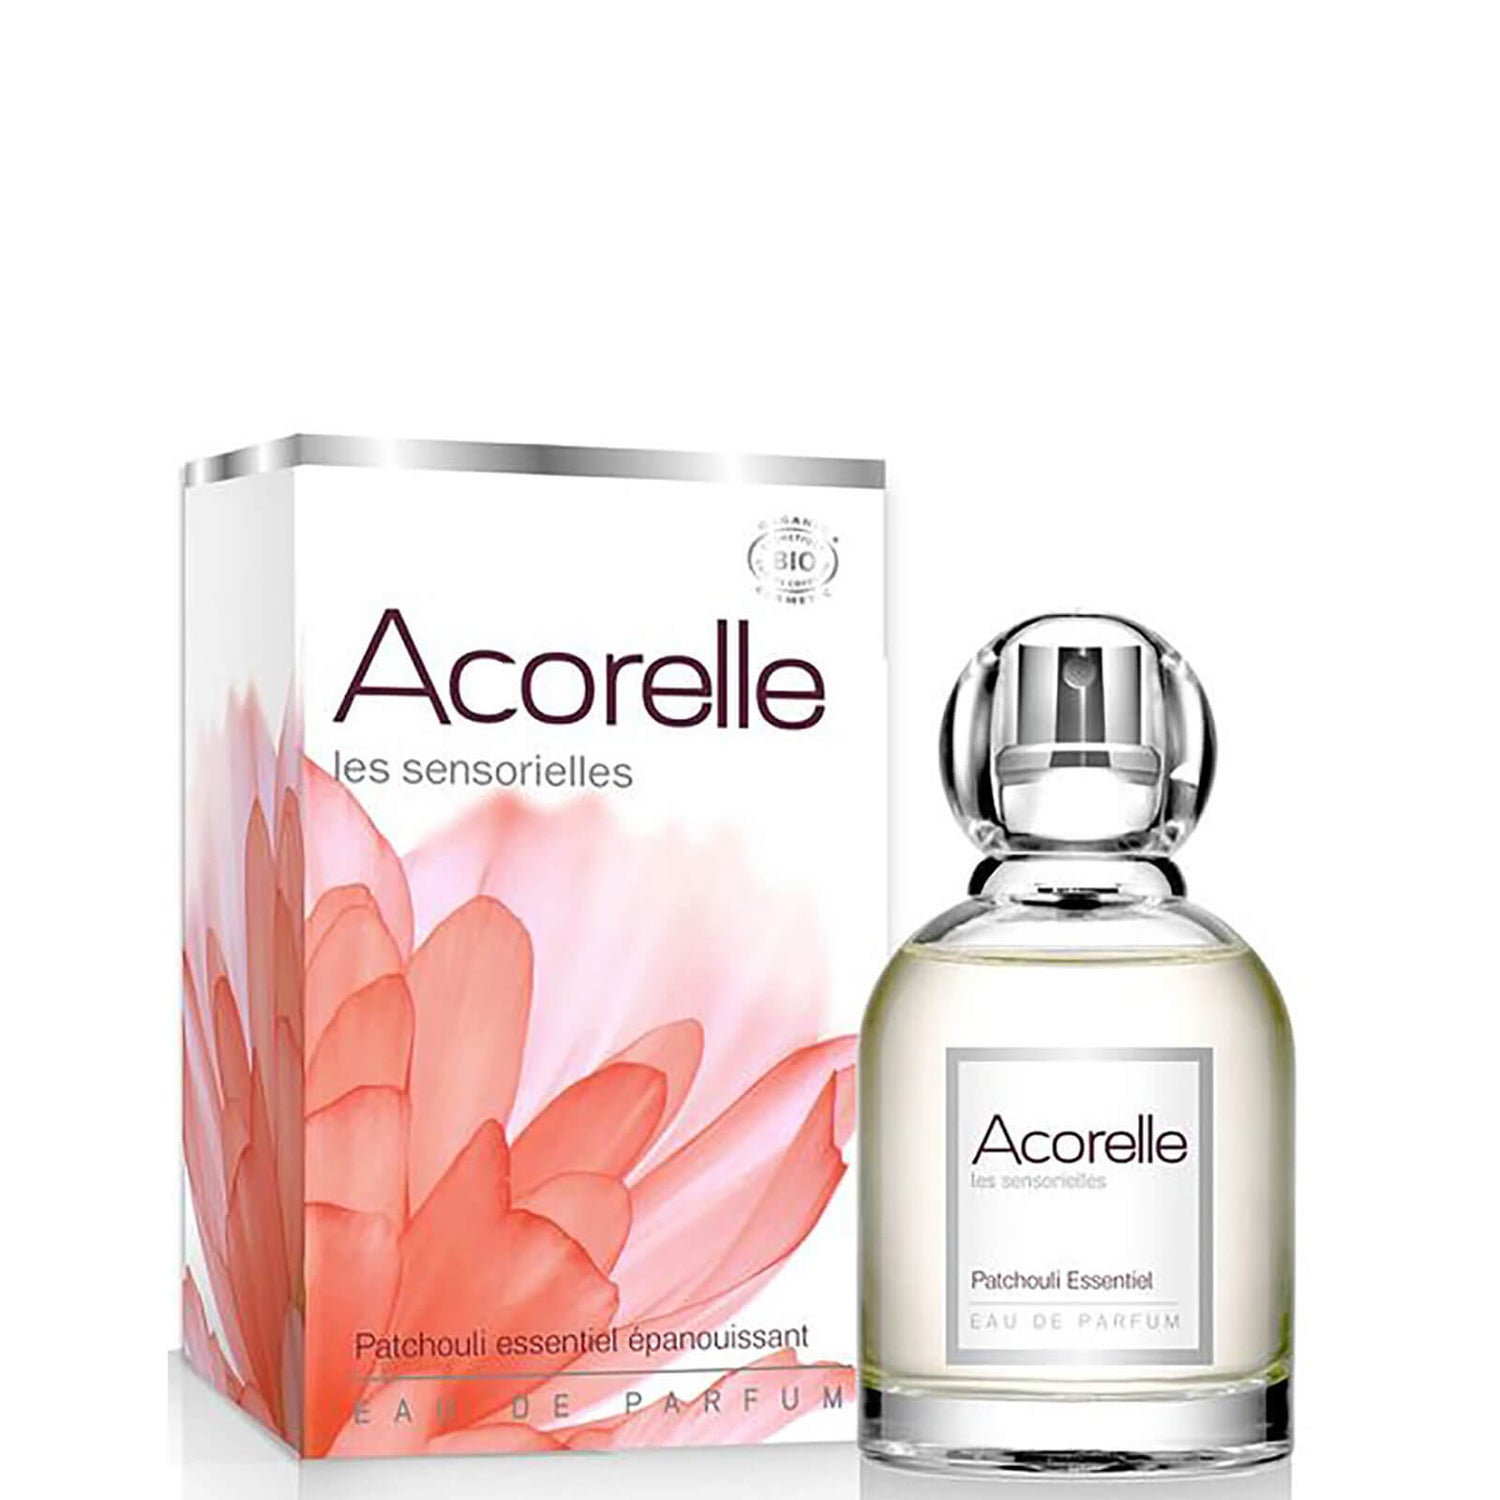 Acorelle Patchouli Essentiel Eau de Parfum 50 ml